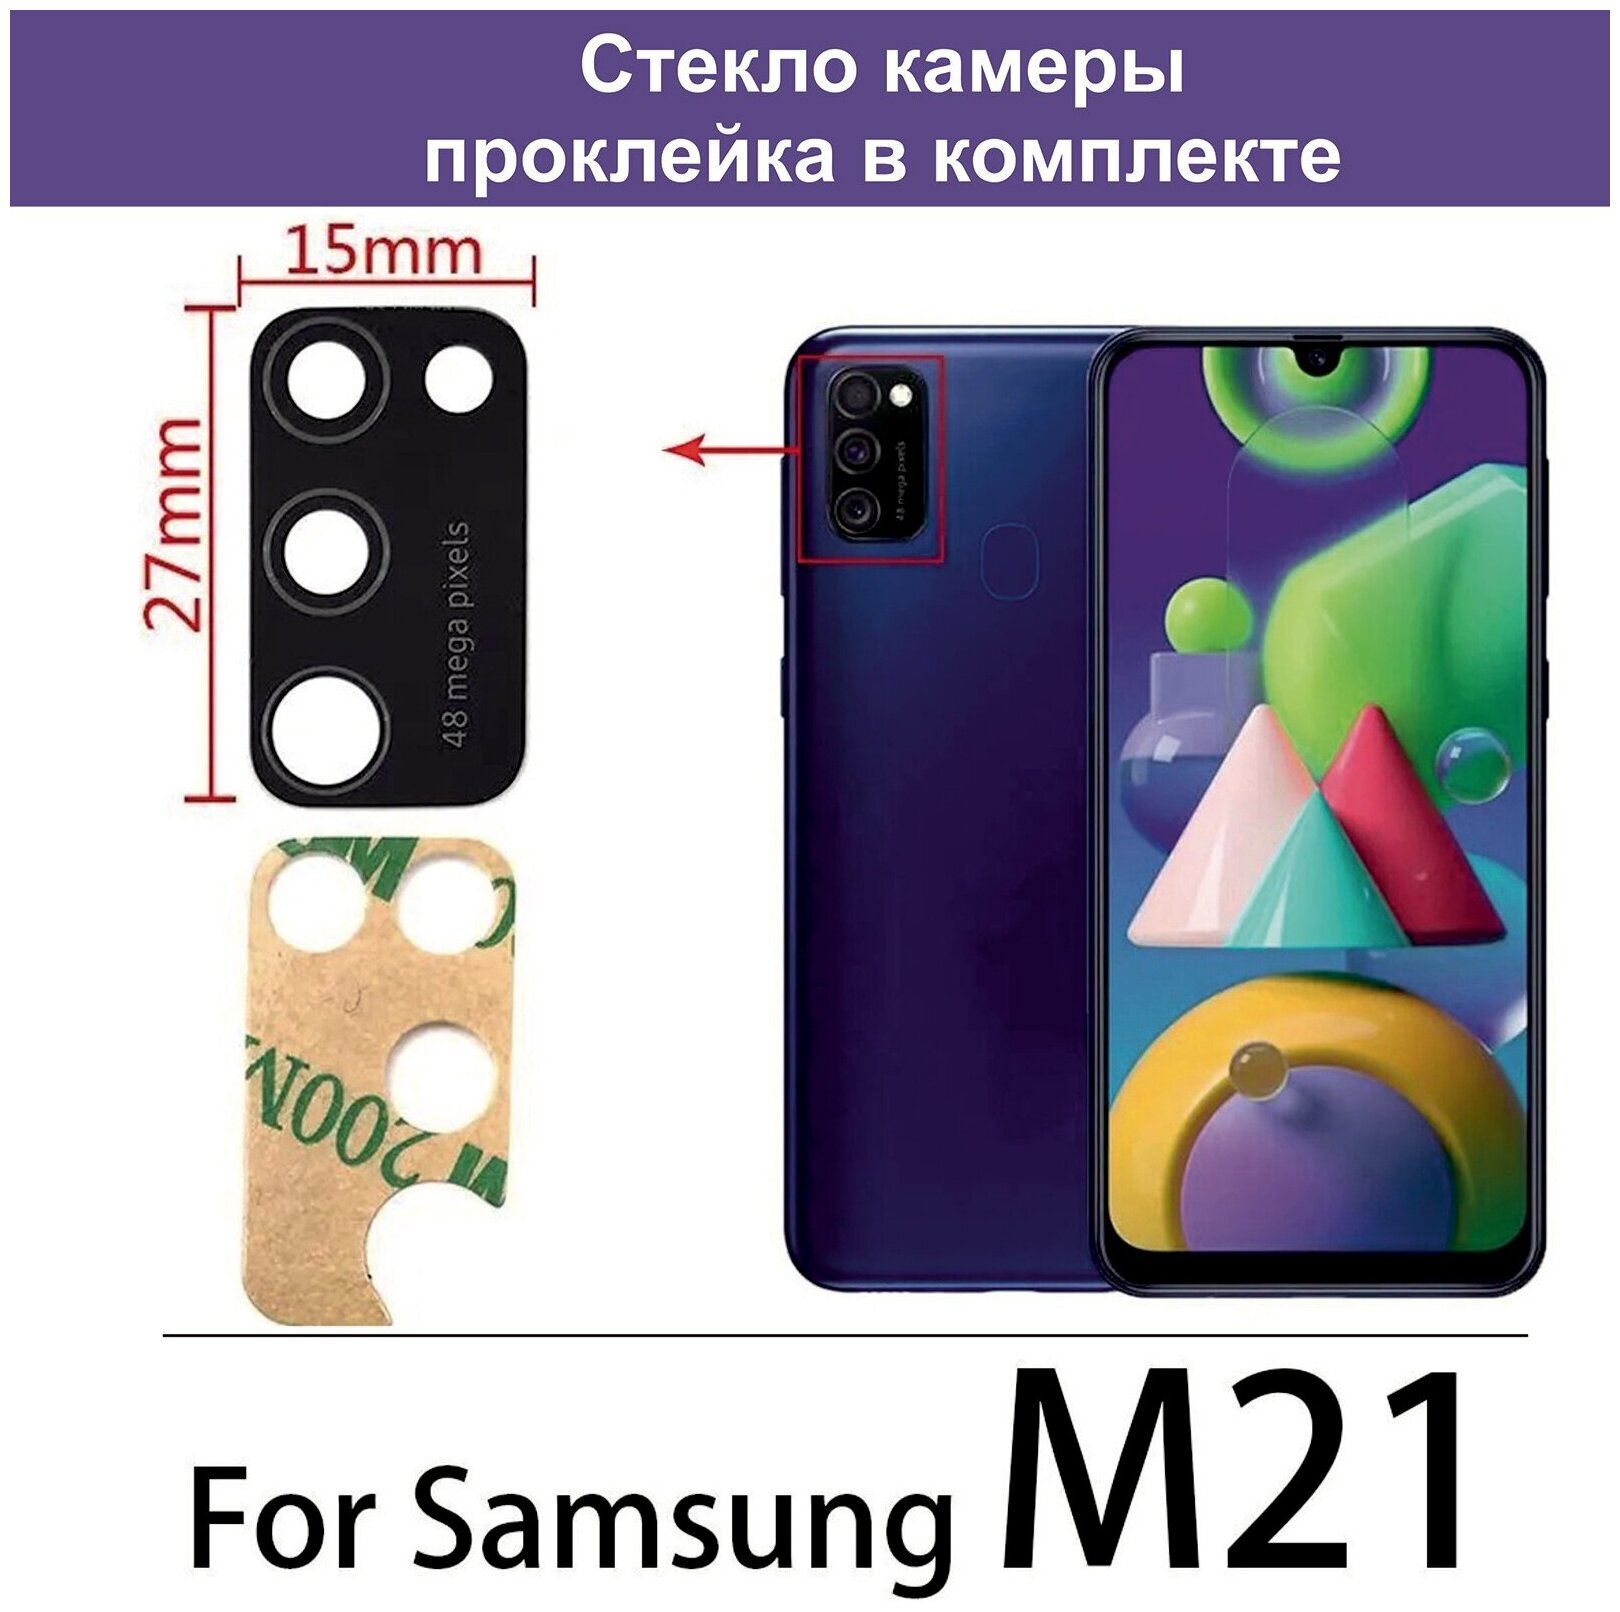 Стекло камеры для Samsung SM-M215F Galaxy M21